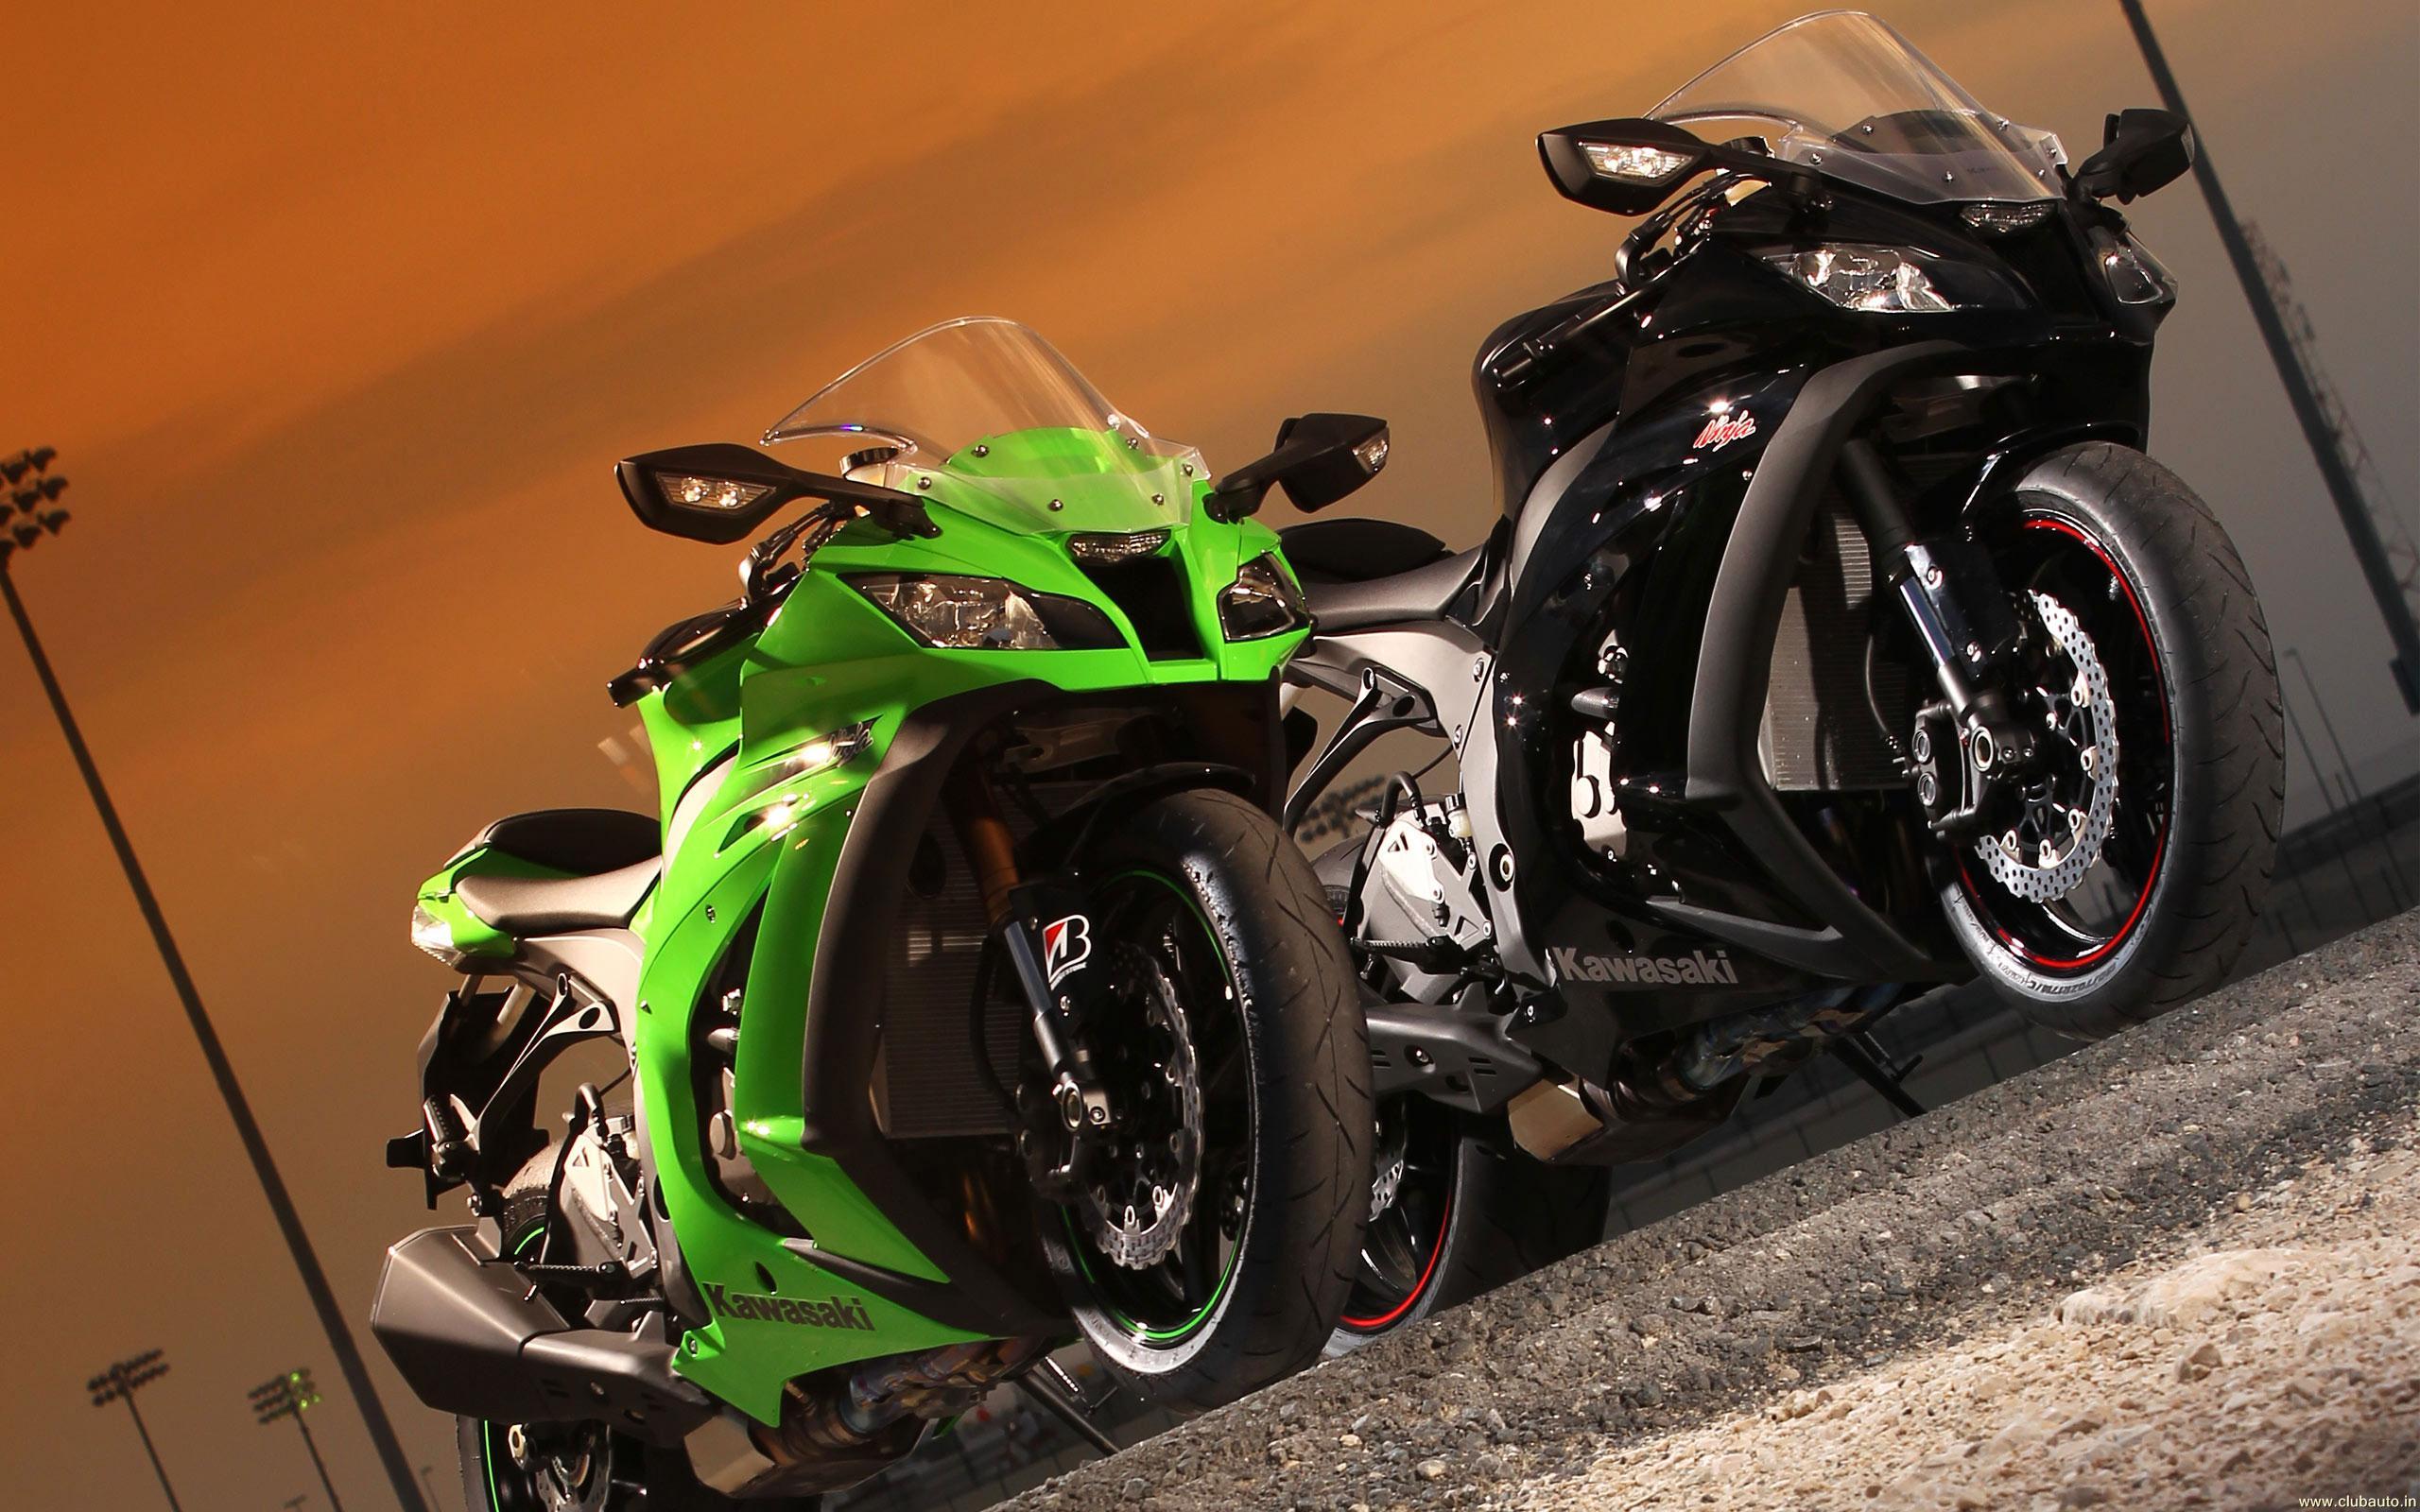 Wallpaper > Bikes > Kawasaki > Ninja ZX 10R > Kawasaki Ninja ZX 10R